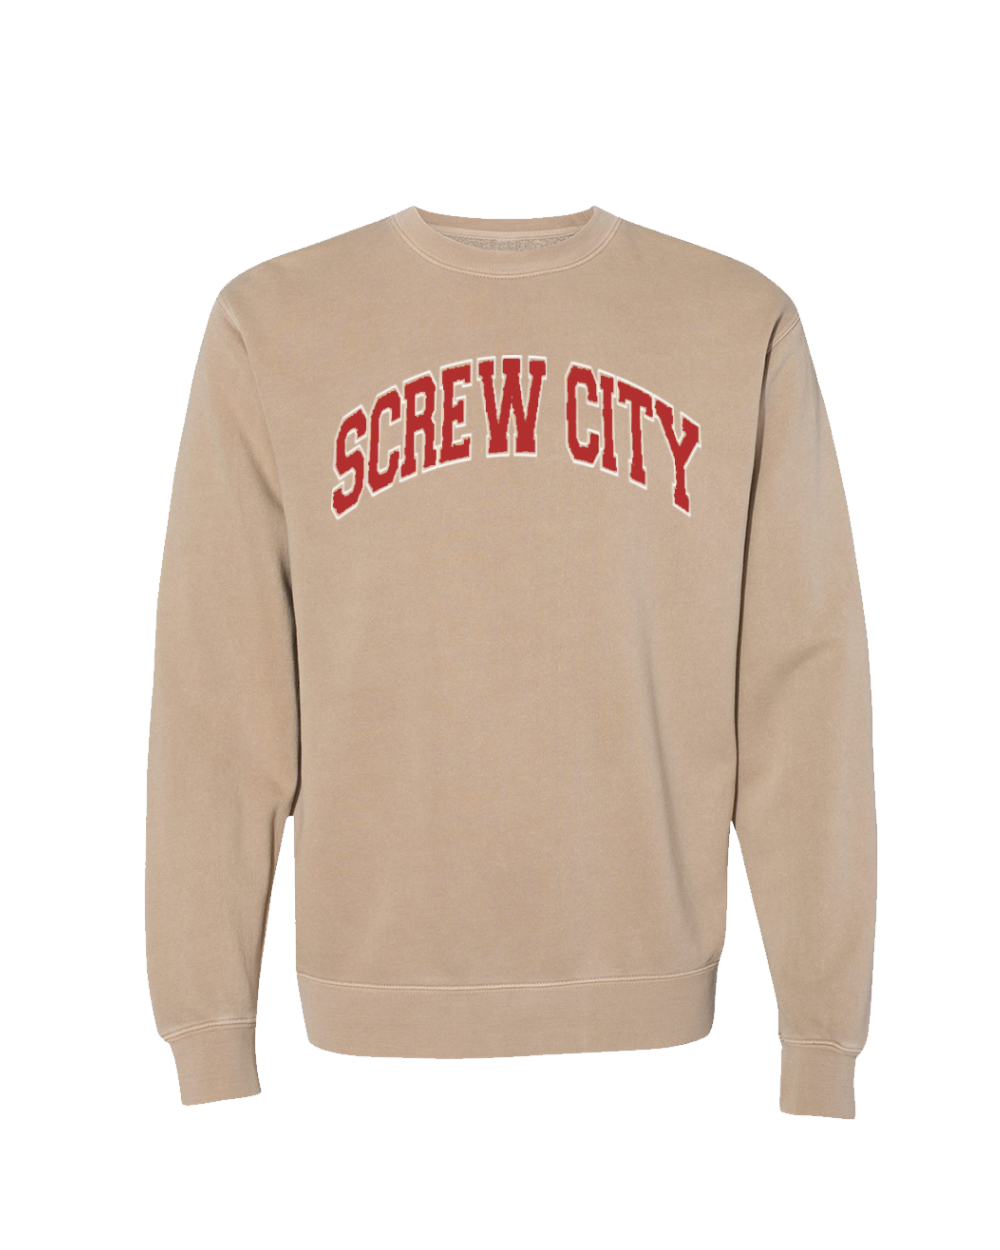 Screw City Crewneck (Sandstone)